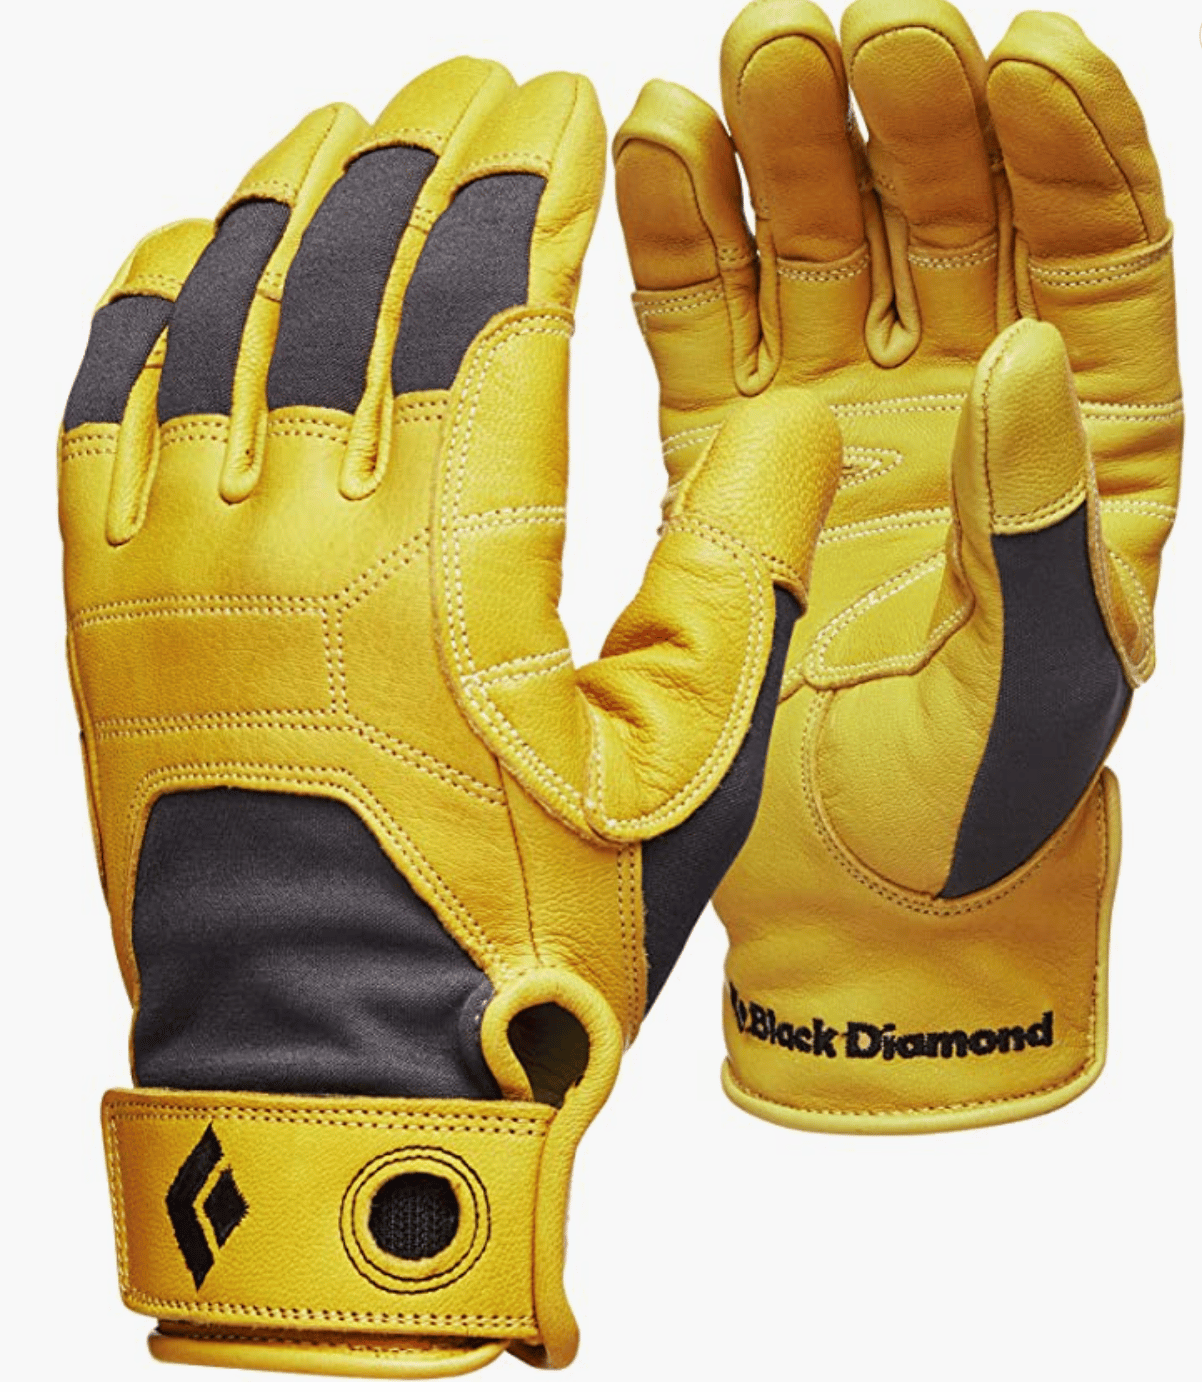 Black Diamond Dirt Bag Gloves Guantes, Unisex Adulto DAKINE Scout